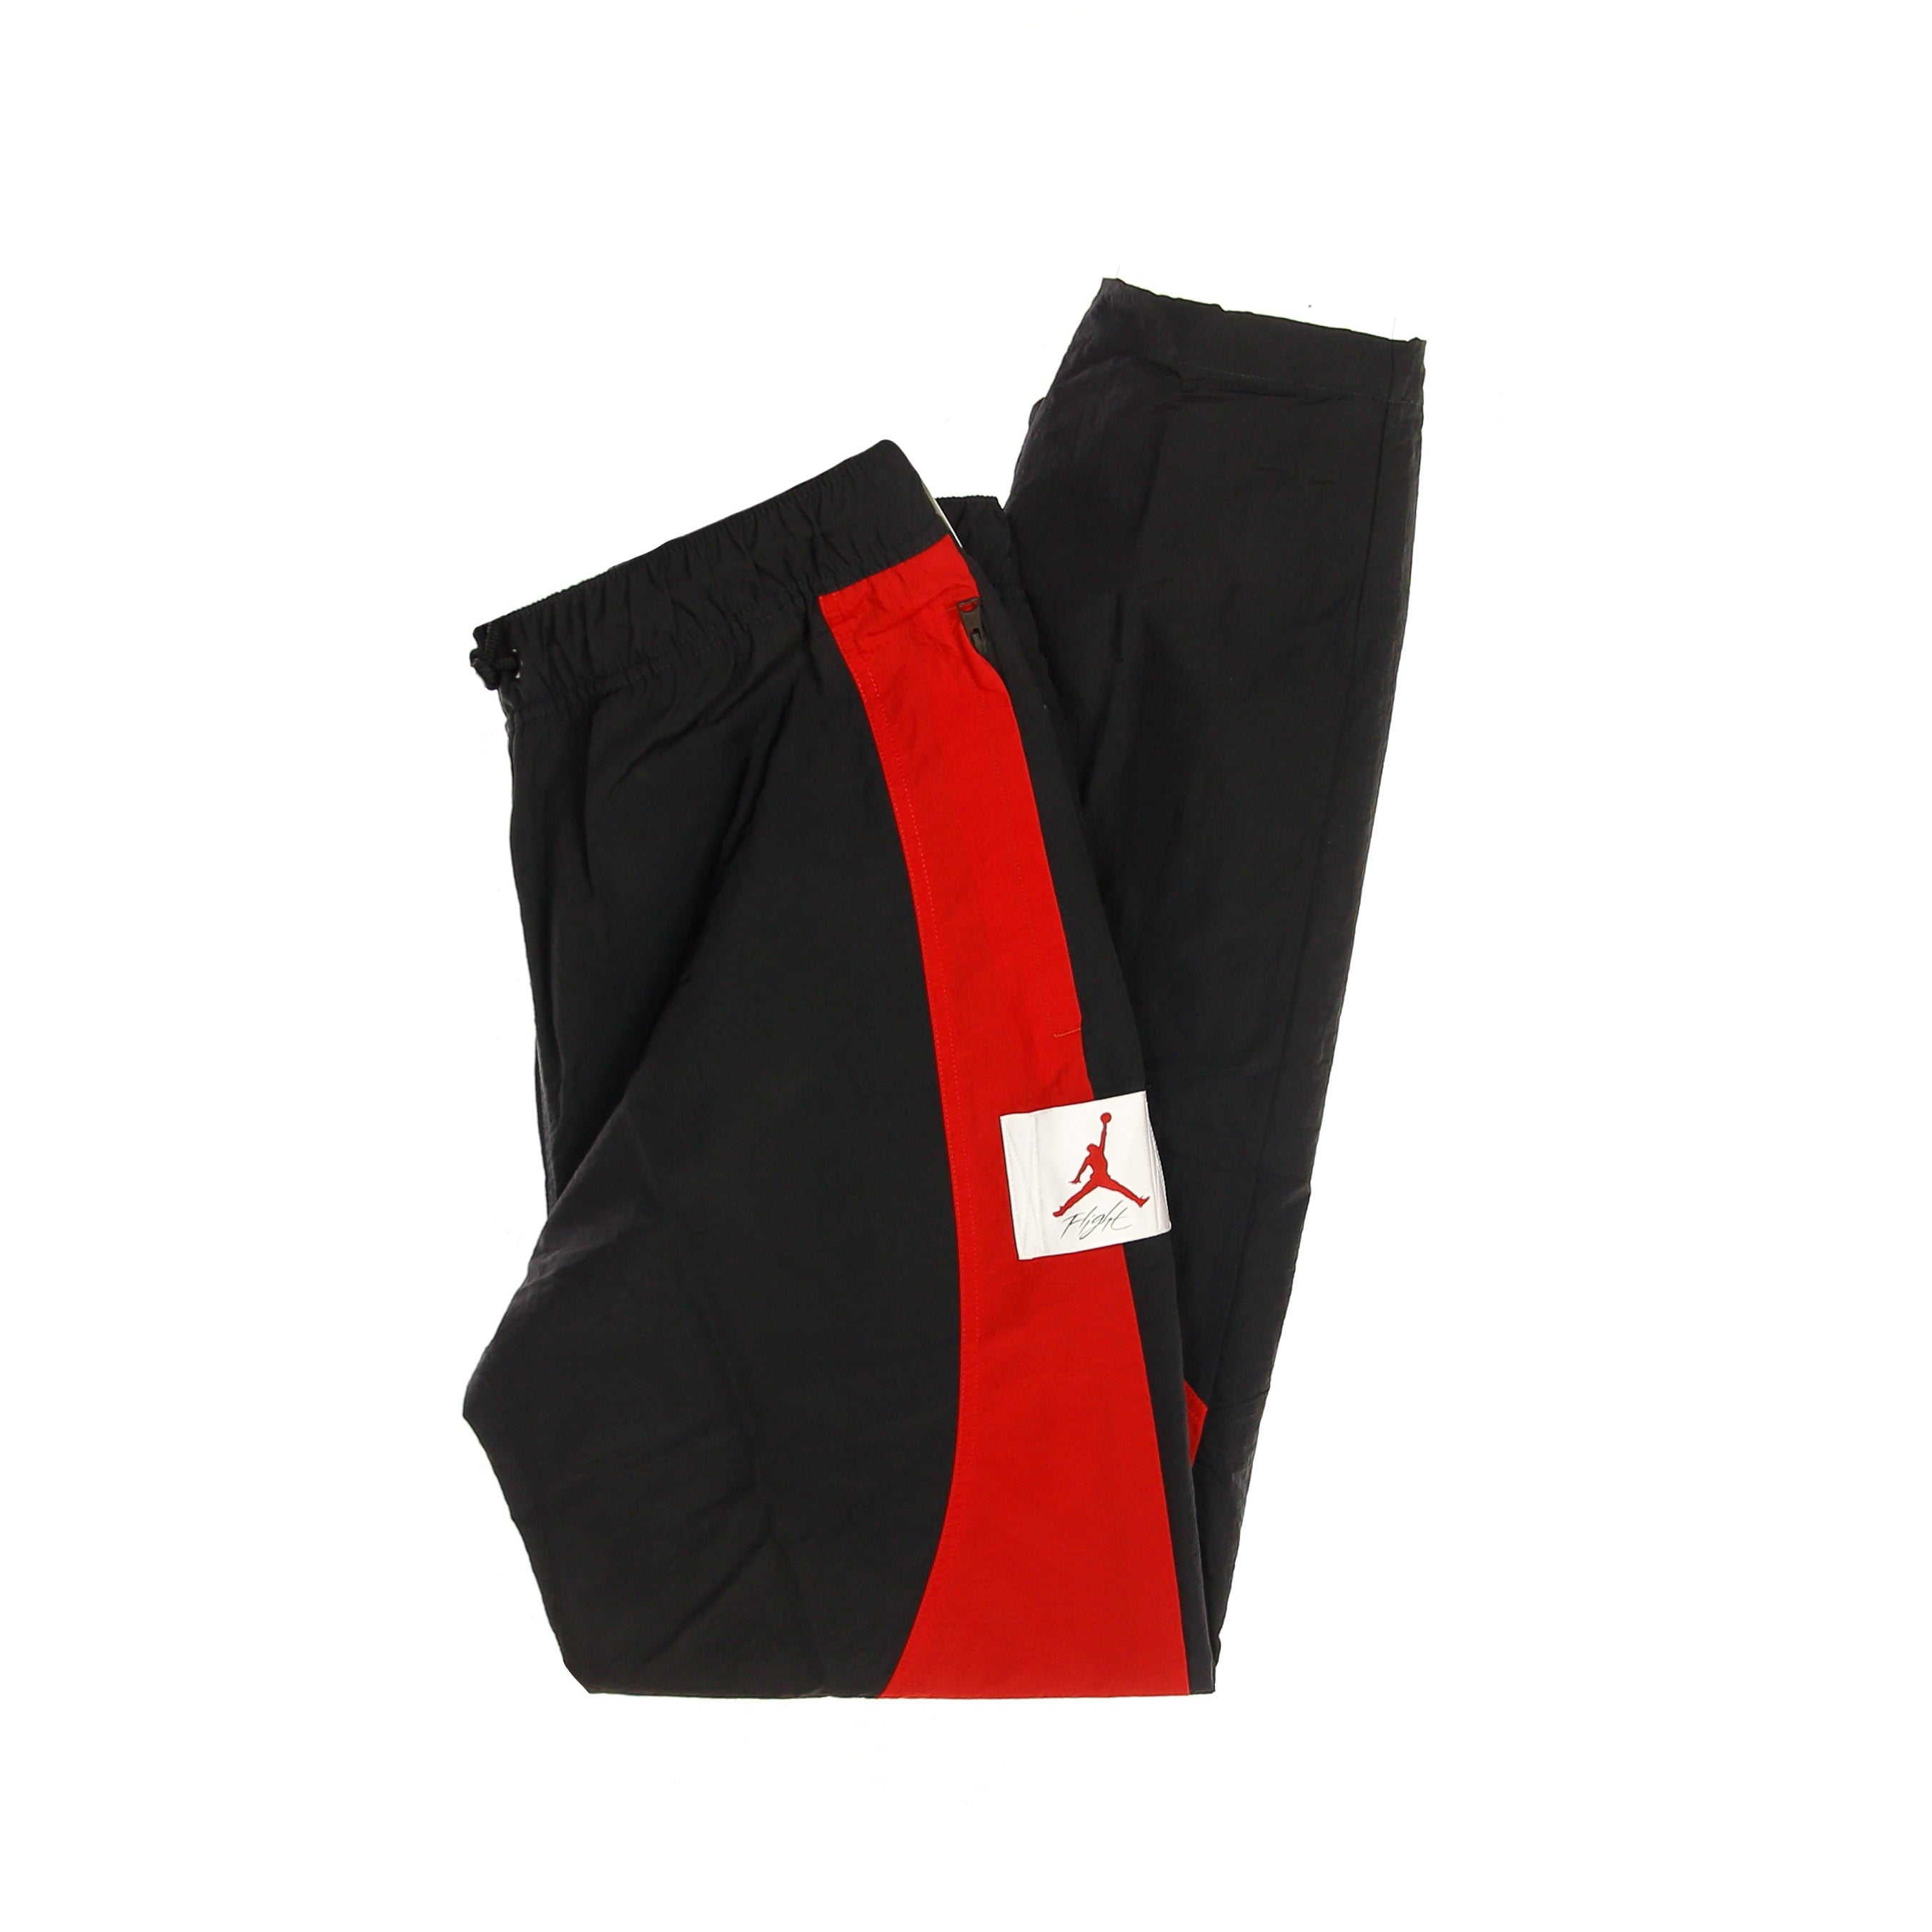 Jordan, Pantalone Tuta Uomo M Flight Suit Pant, Black/gym Red